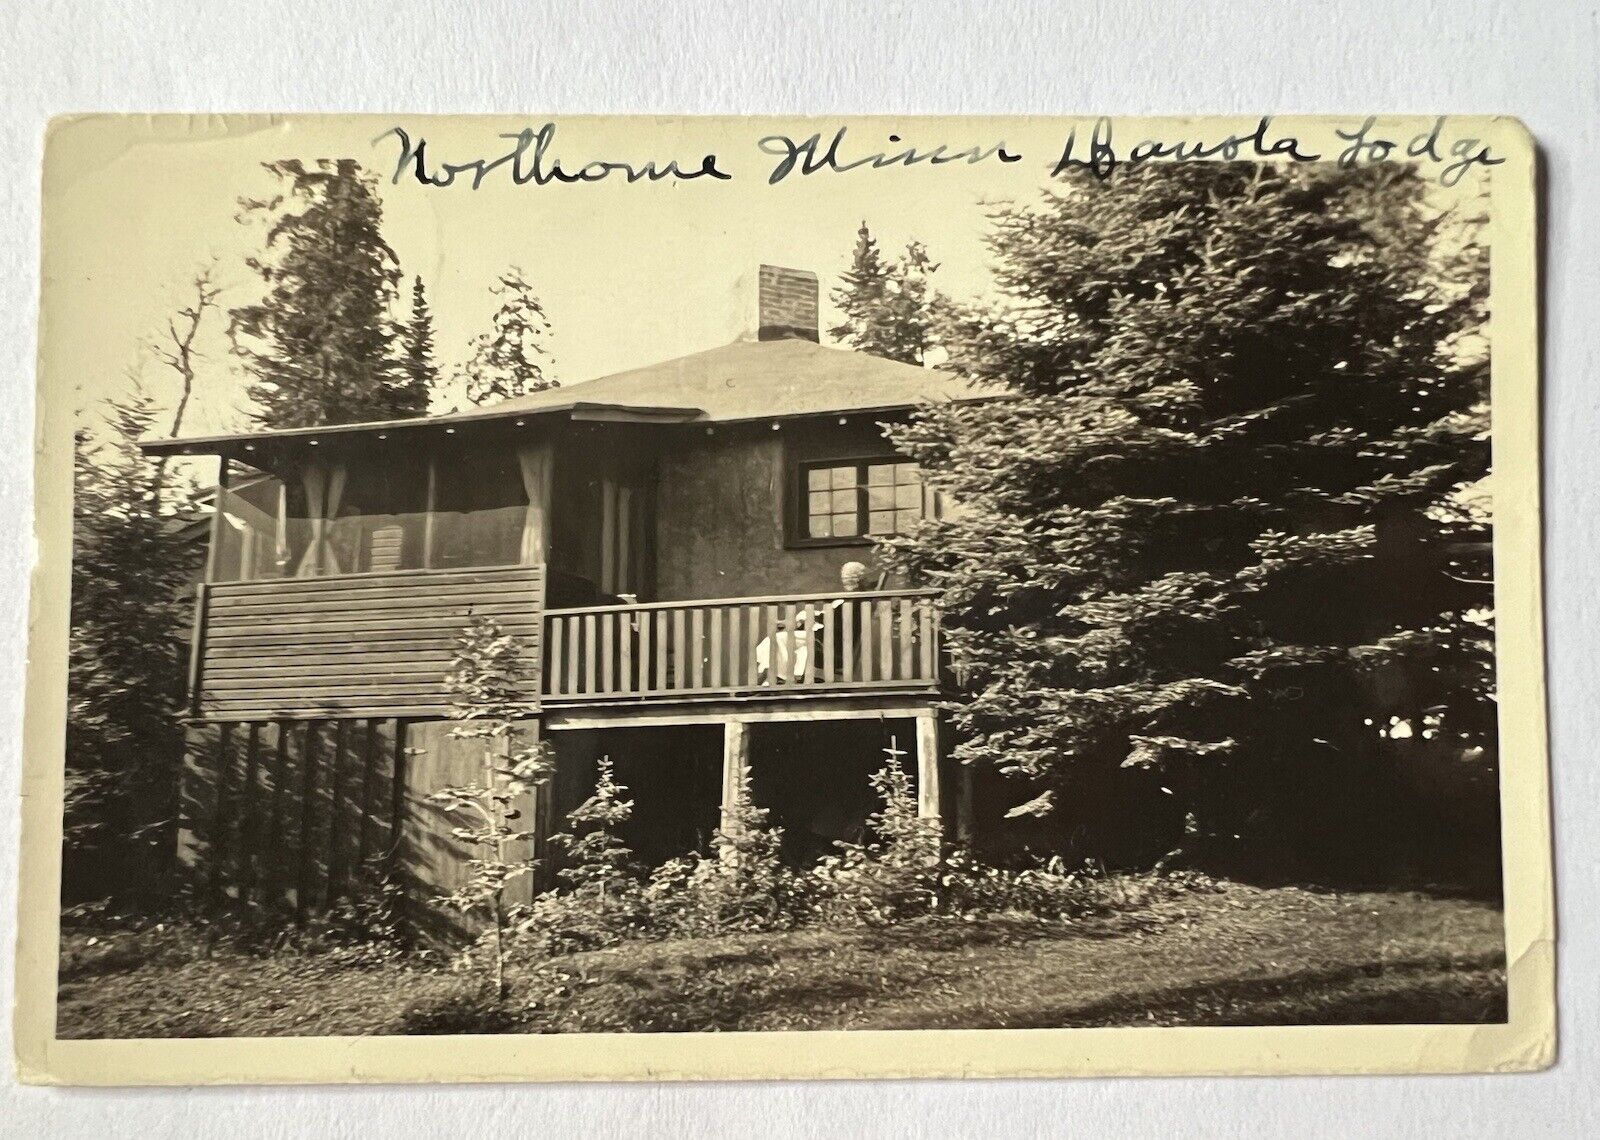 Northome Minnesota DAKOTA LODGE RPPC 1937